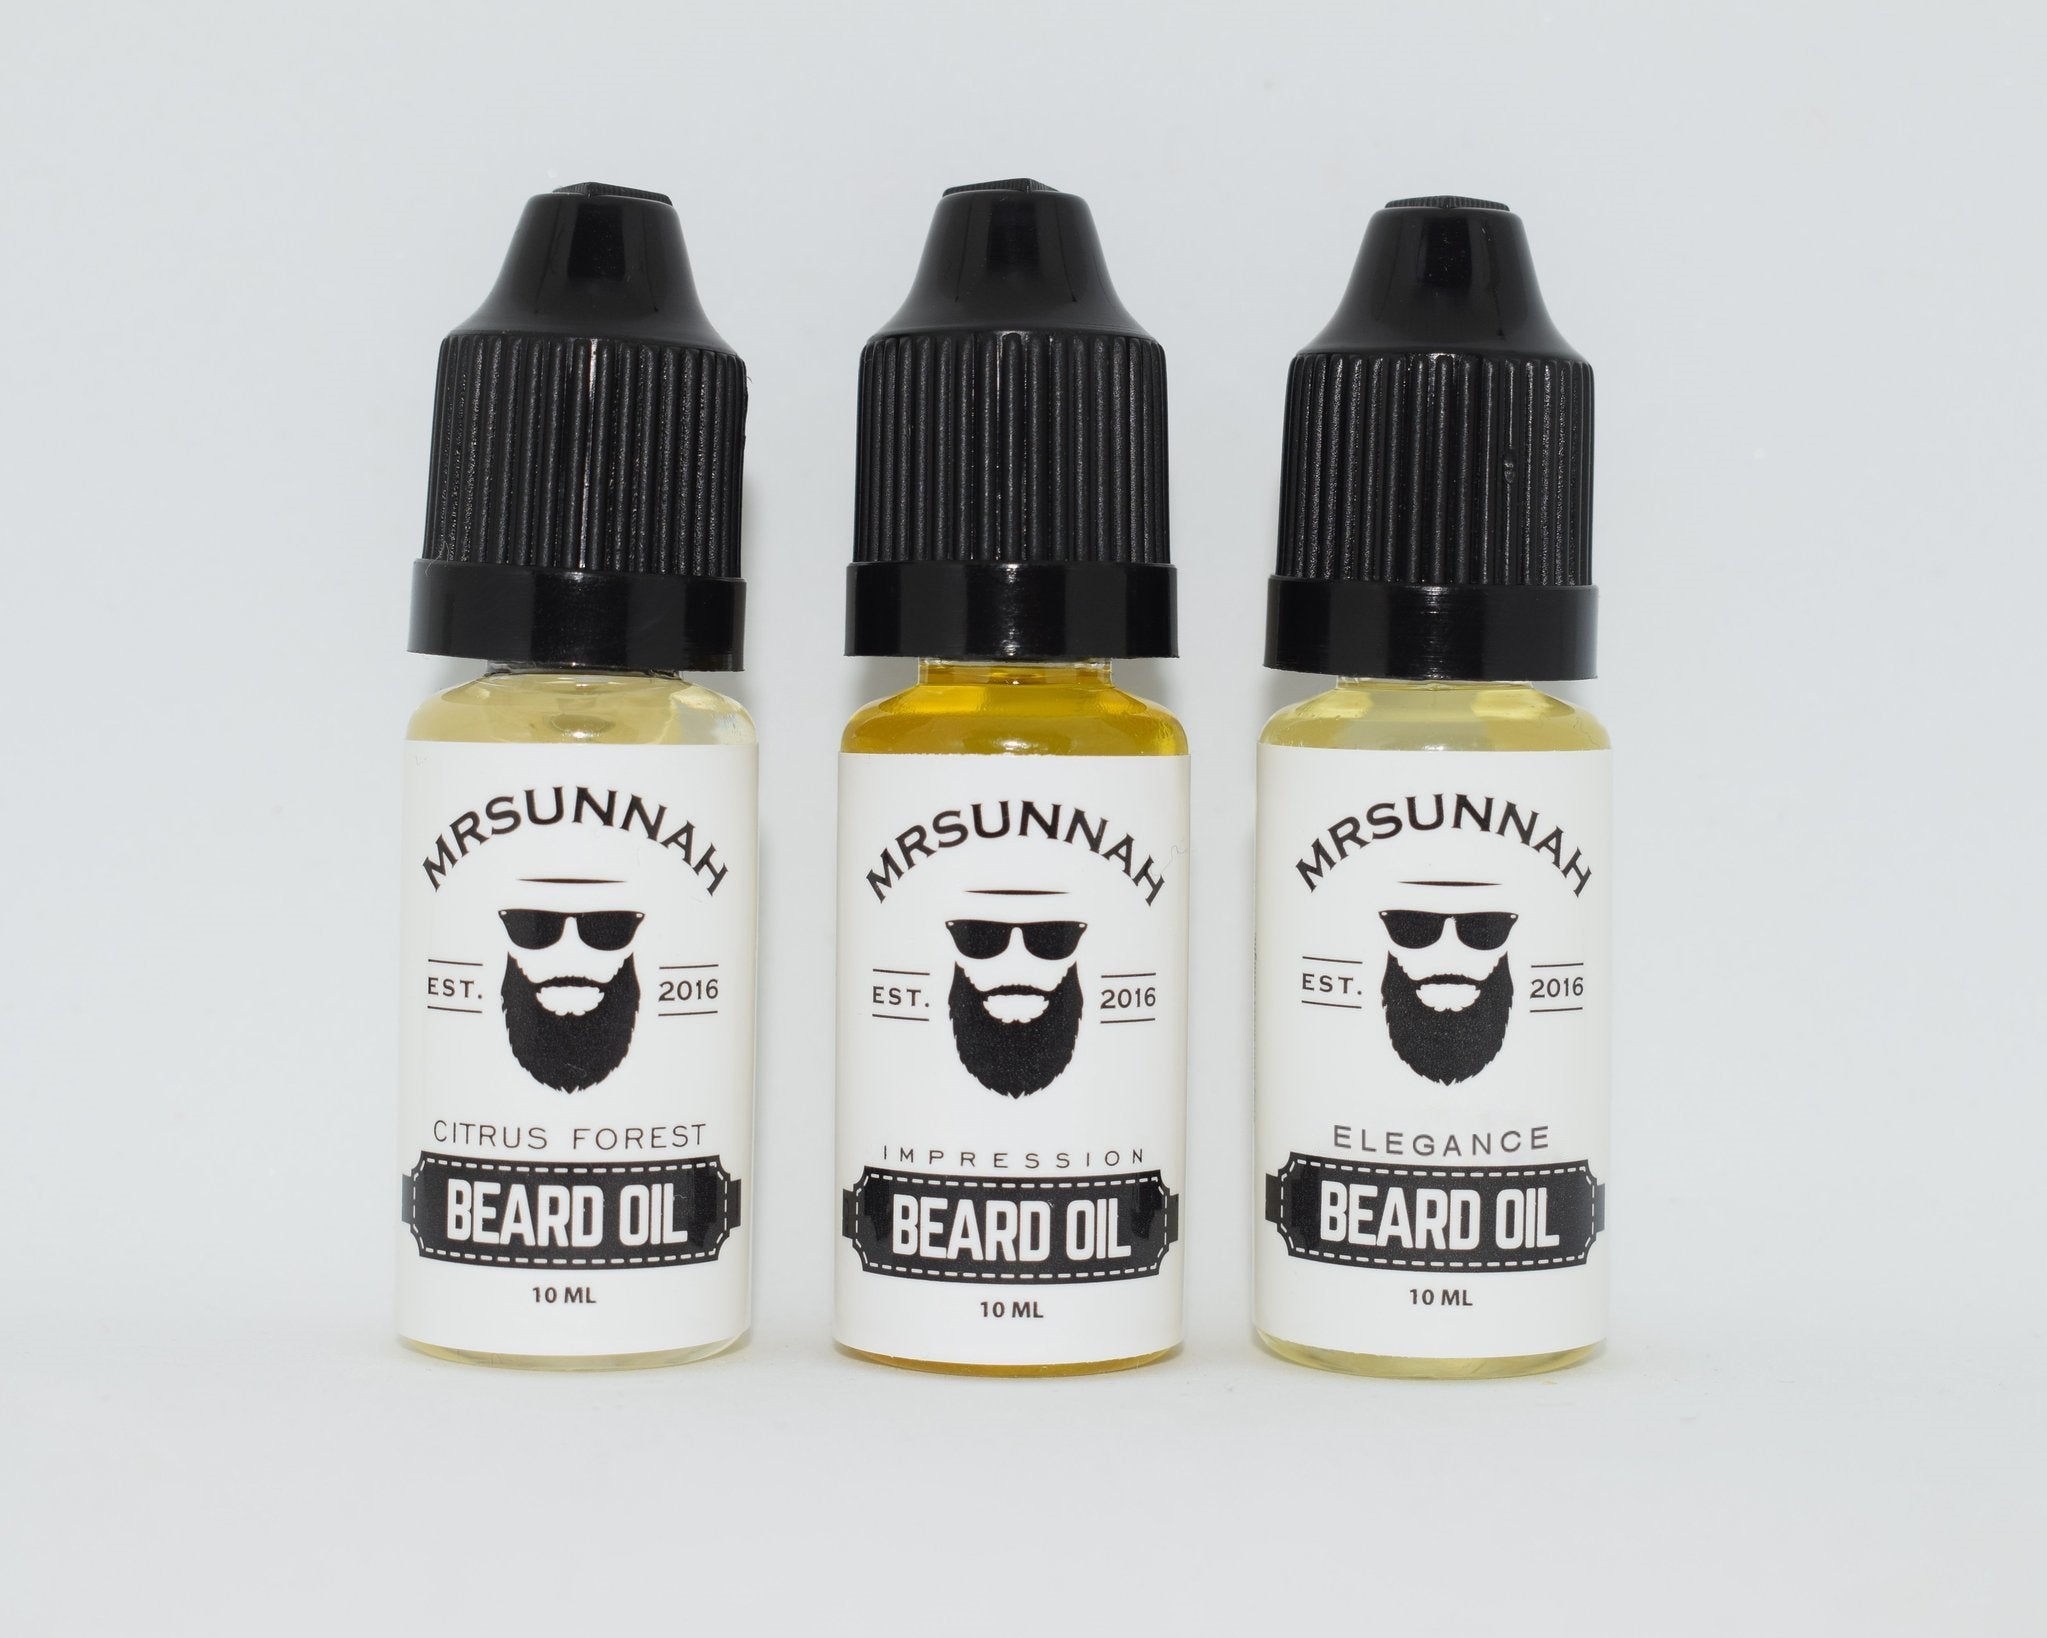 3 Beard Oil Set (10ml) - Mrsunnah Grooming Co 